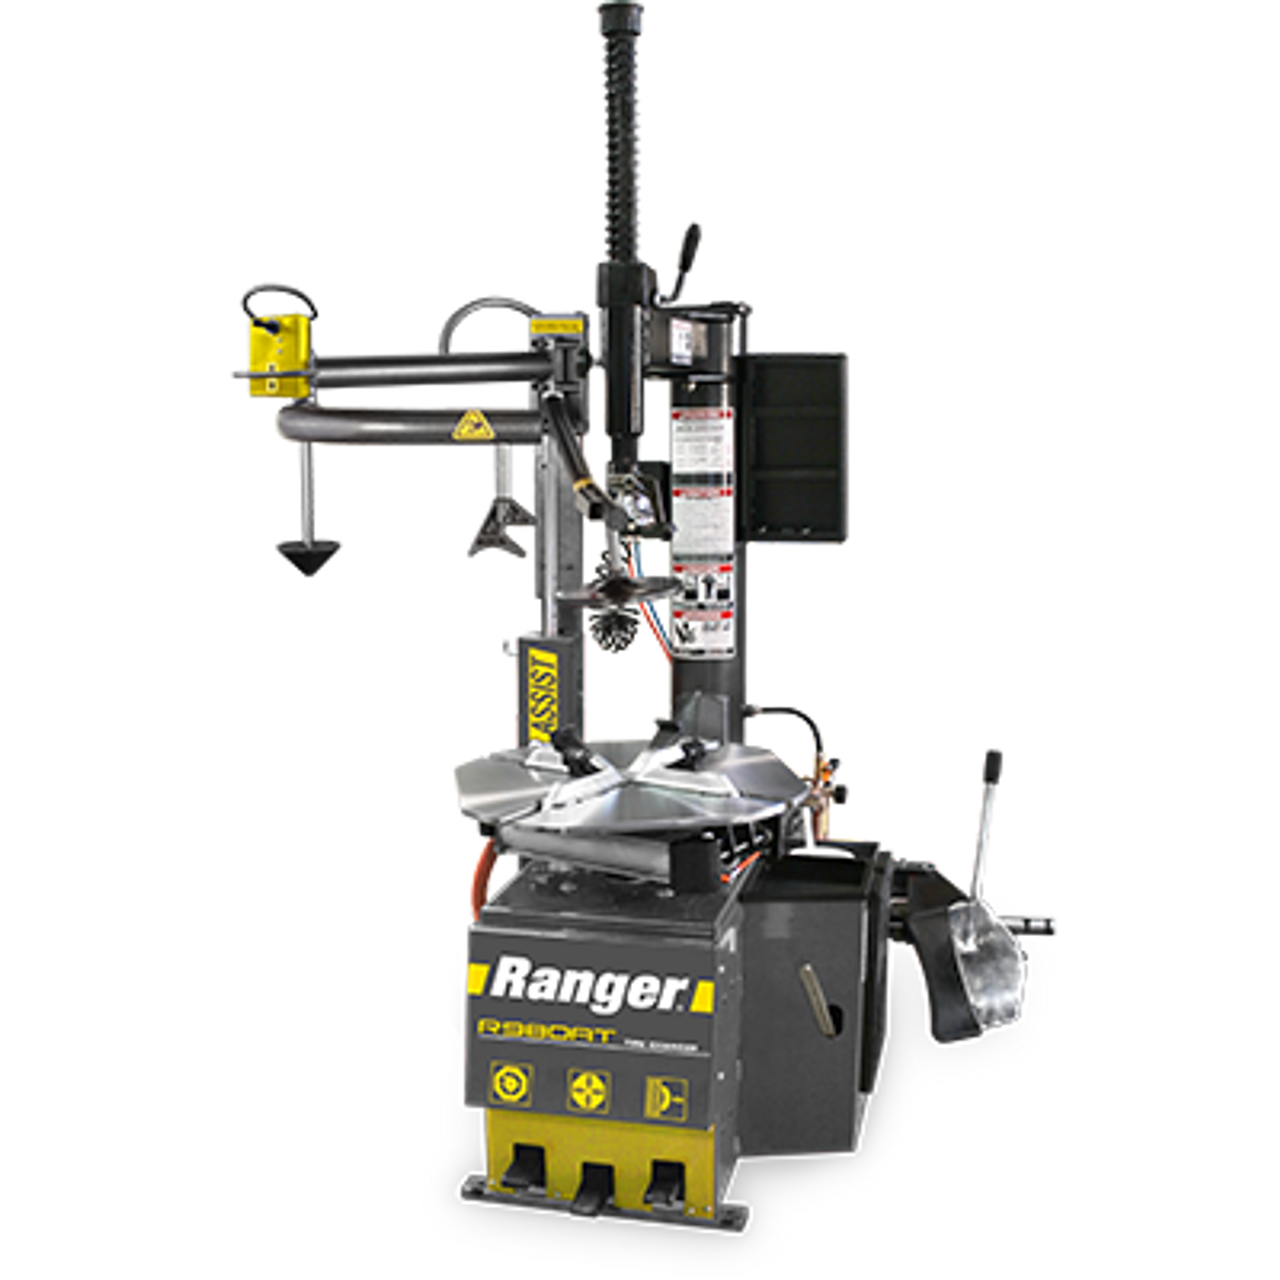 RANGER R980AT + DST-2420 + Wheel weights